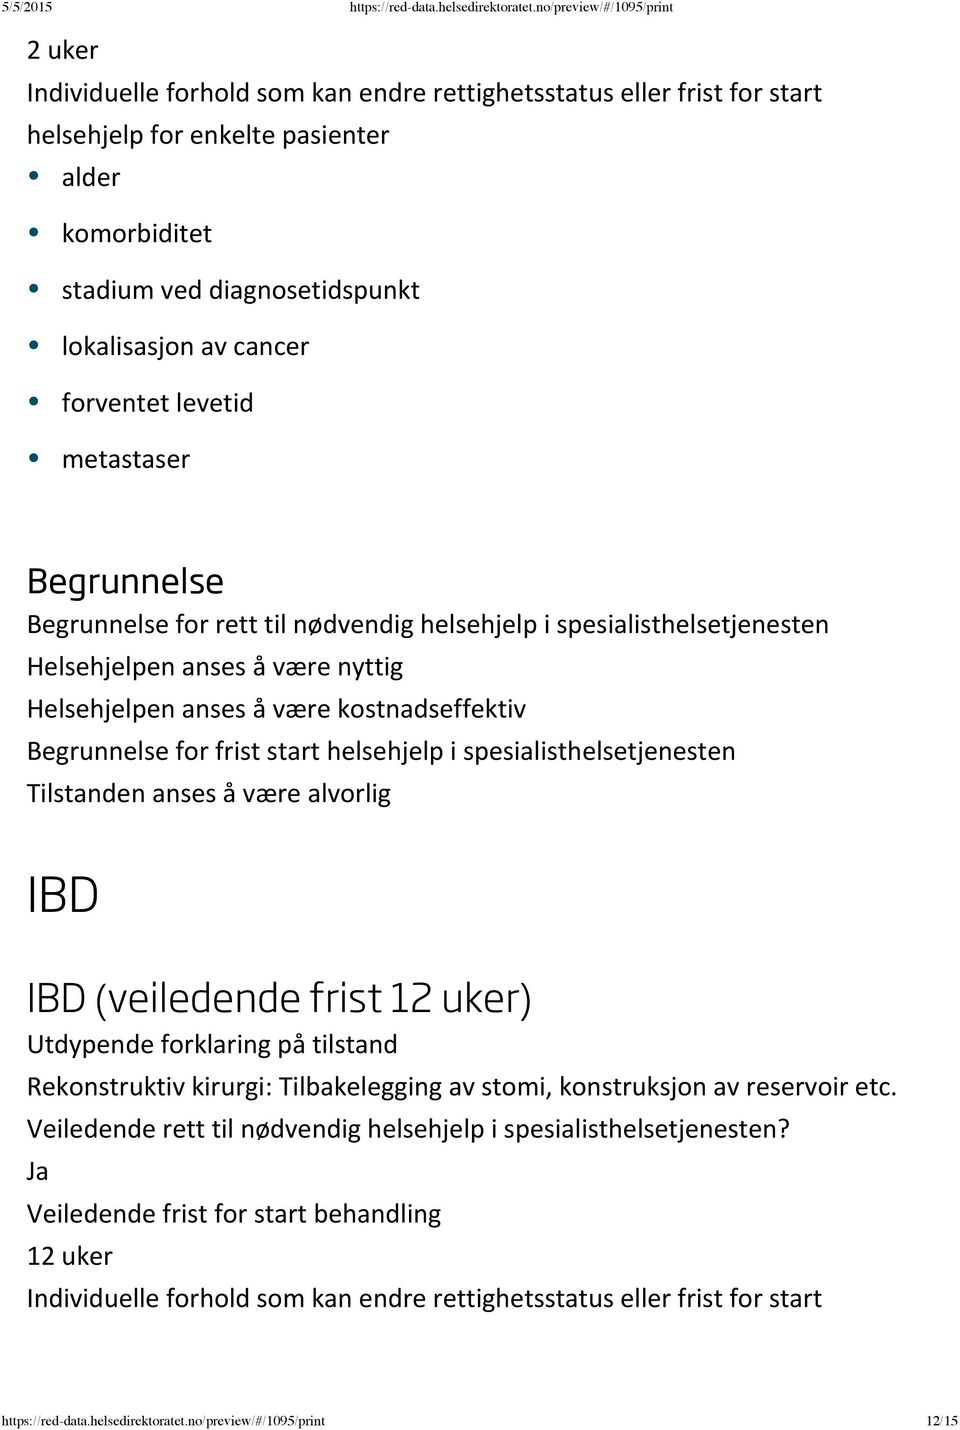 IBD IBD (veiledende frist 12 uker) Rekonstruktiv kirurgi: Tilbakelegging av stomi, konstruksjon av reservoir